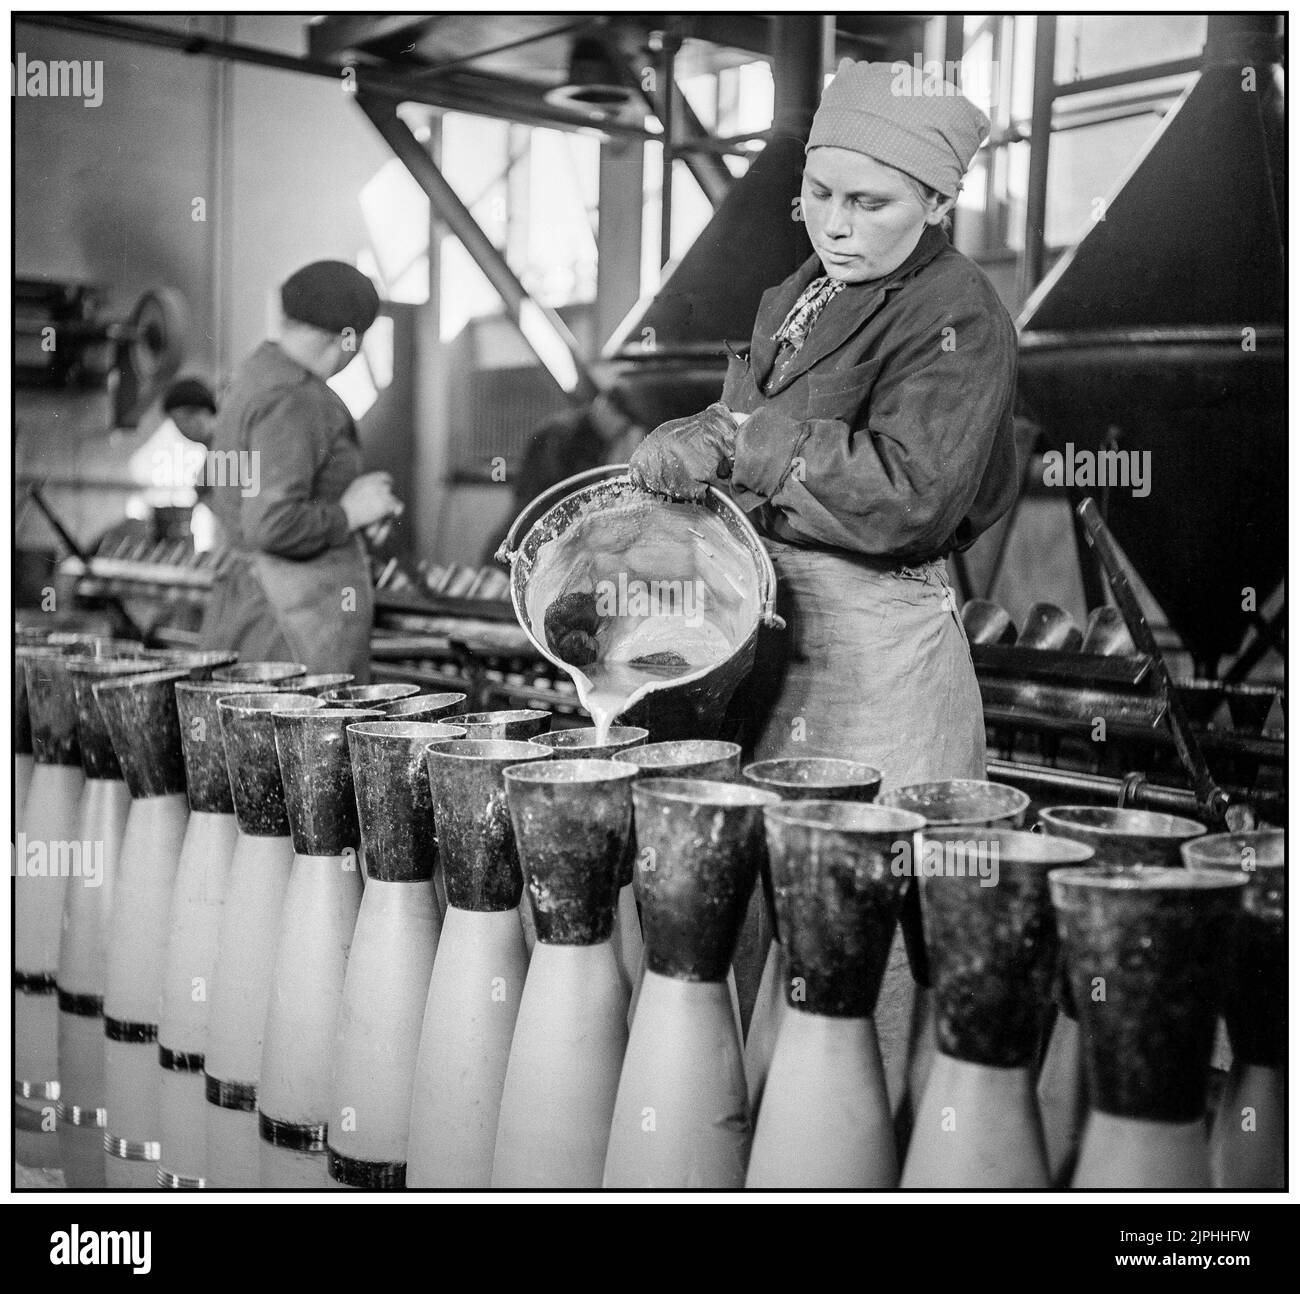 FINNLAND MILITÄRISCHE PRODUKTION 152mm Shell-Produktion in Finnland 1942s Zweiten Weltkrieg Gießen von flüssigen Amatol Amatol ist ein hochexplosives Material, das aus einer Mischung aus TNT und Ammoniumnitrat hergestellt wird.der britische Name stammt von den Wörtern Ammonium und Toluol (der Vorstufe von TNT). Ähnliche Mischungen (ein Teil Dinitronaphthalin und sieben Teile Ammoniumnitrat) wurden in Frankreich als Schneiderit bezeichnet. Amatol wurde während des Ersten und Zweiten Weltkriegs ausgiebig eingesetzt, typischerweise als Sprengstoff in militärischen Waffen wie Flugzeugbomben, Granaten, Tiefenladungen und Marineminen. Stockfoto